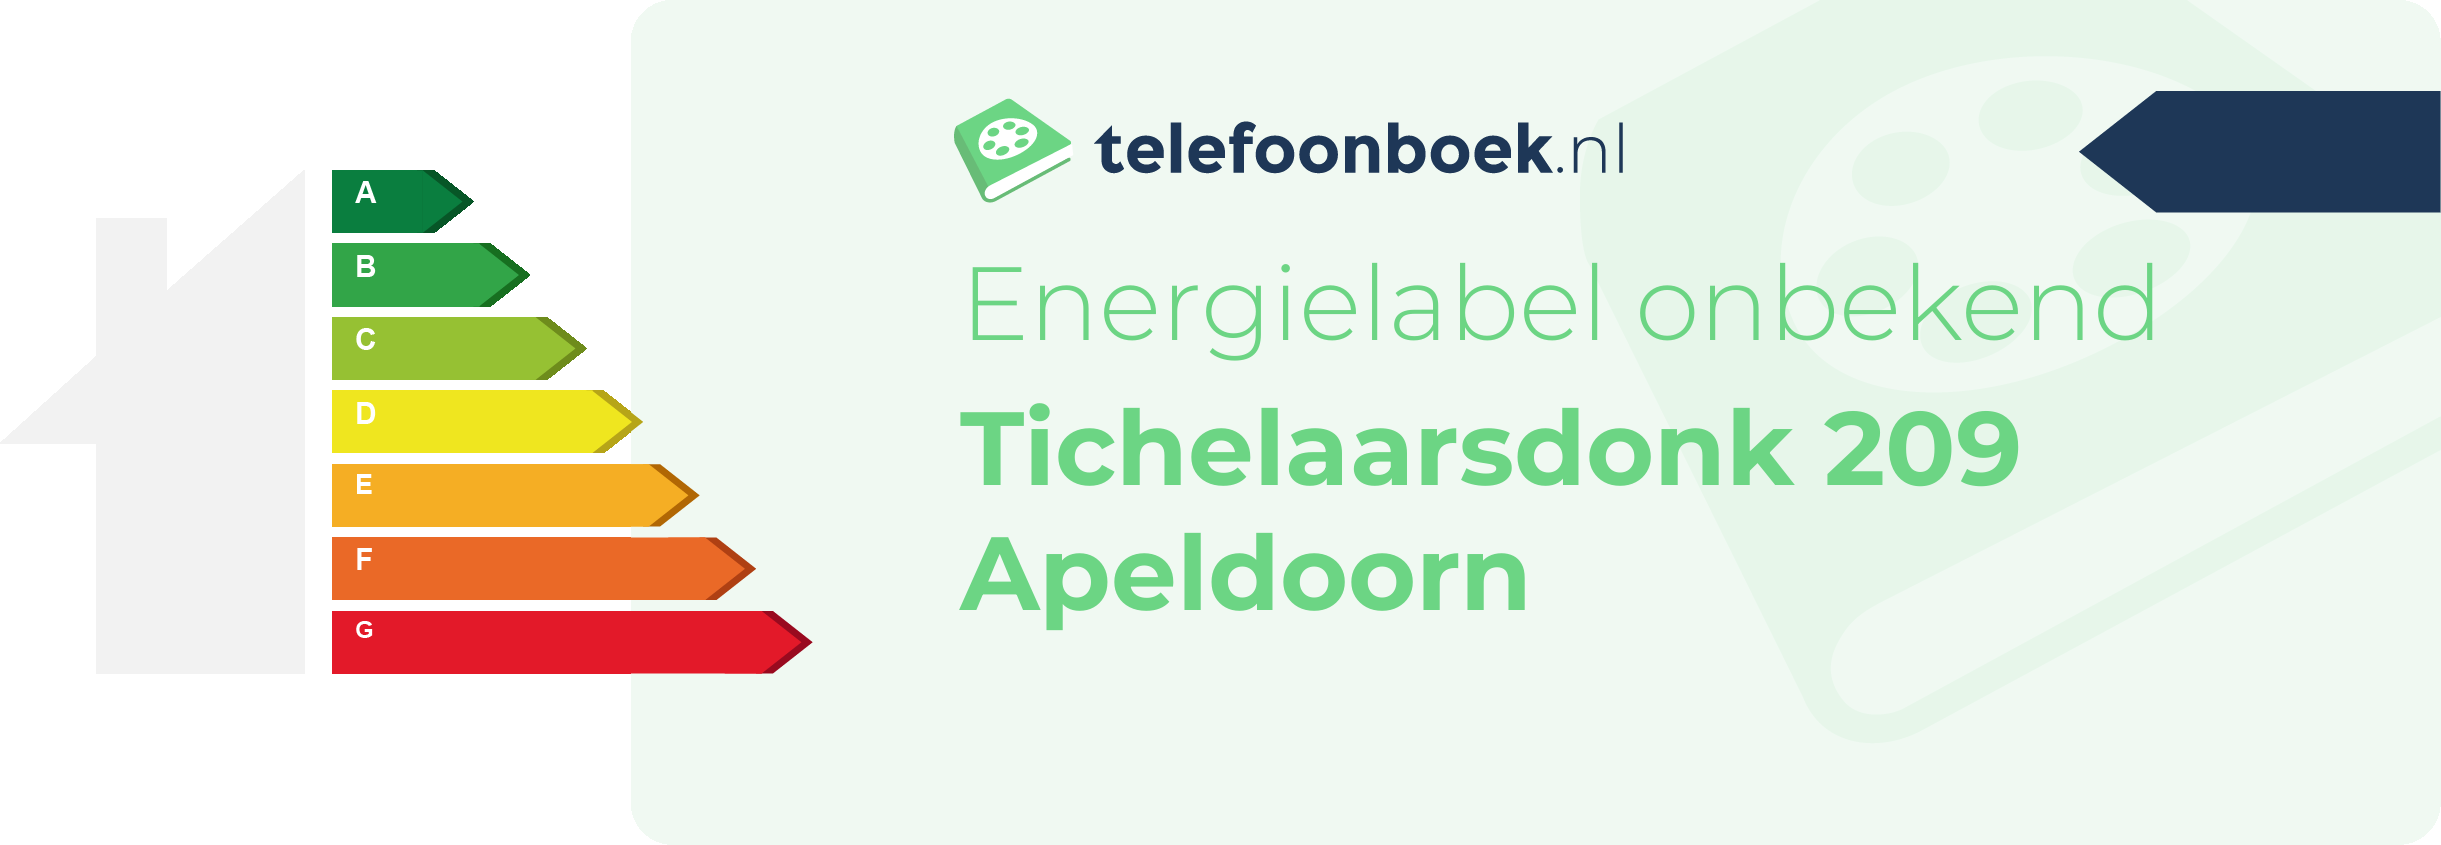 Energielabel Tichelaarsdonk 209 Apeldoorn